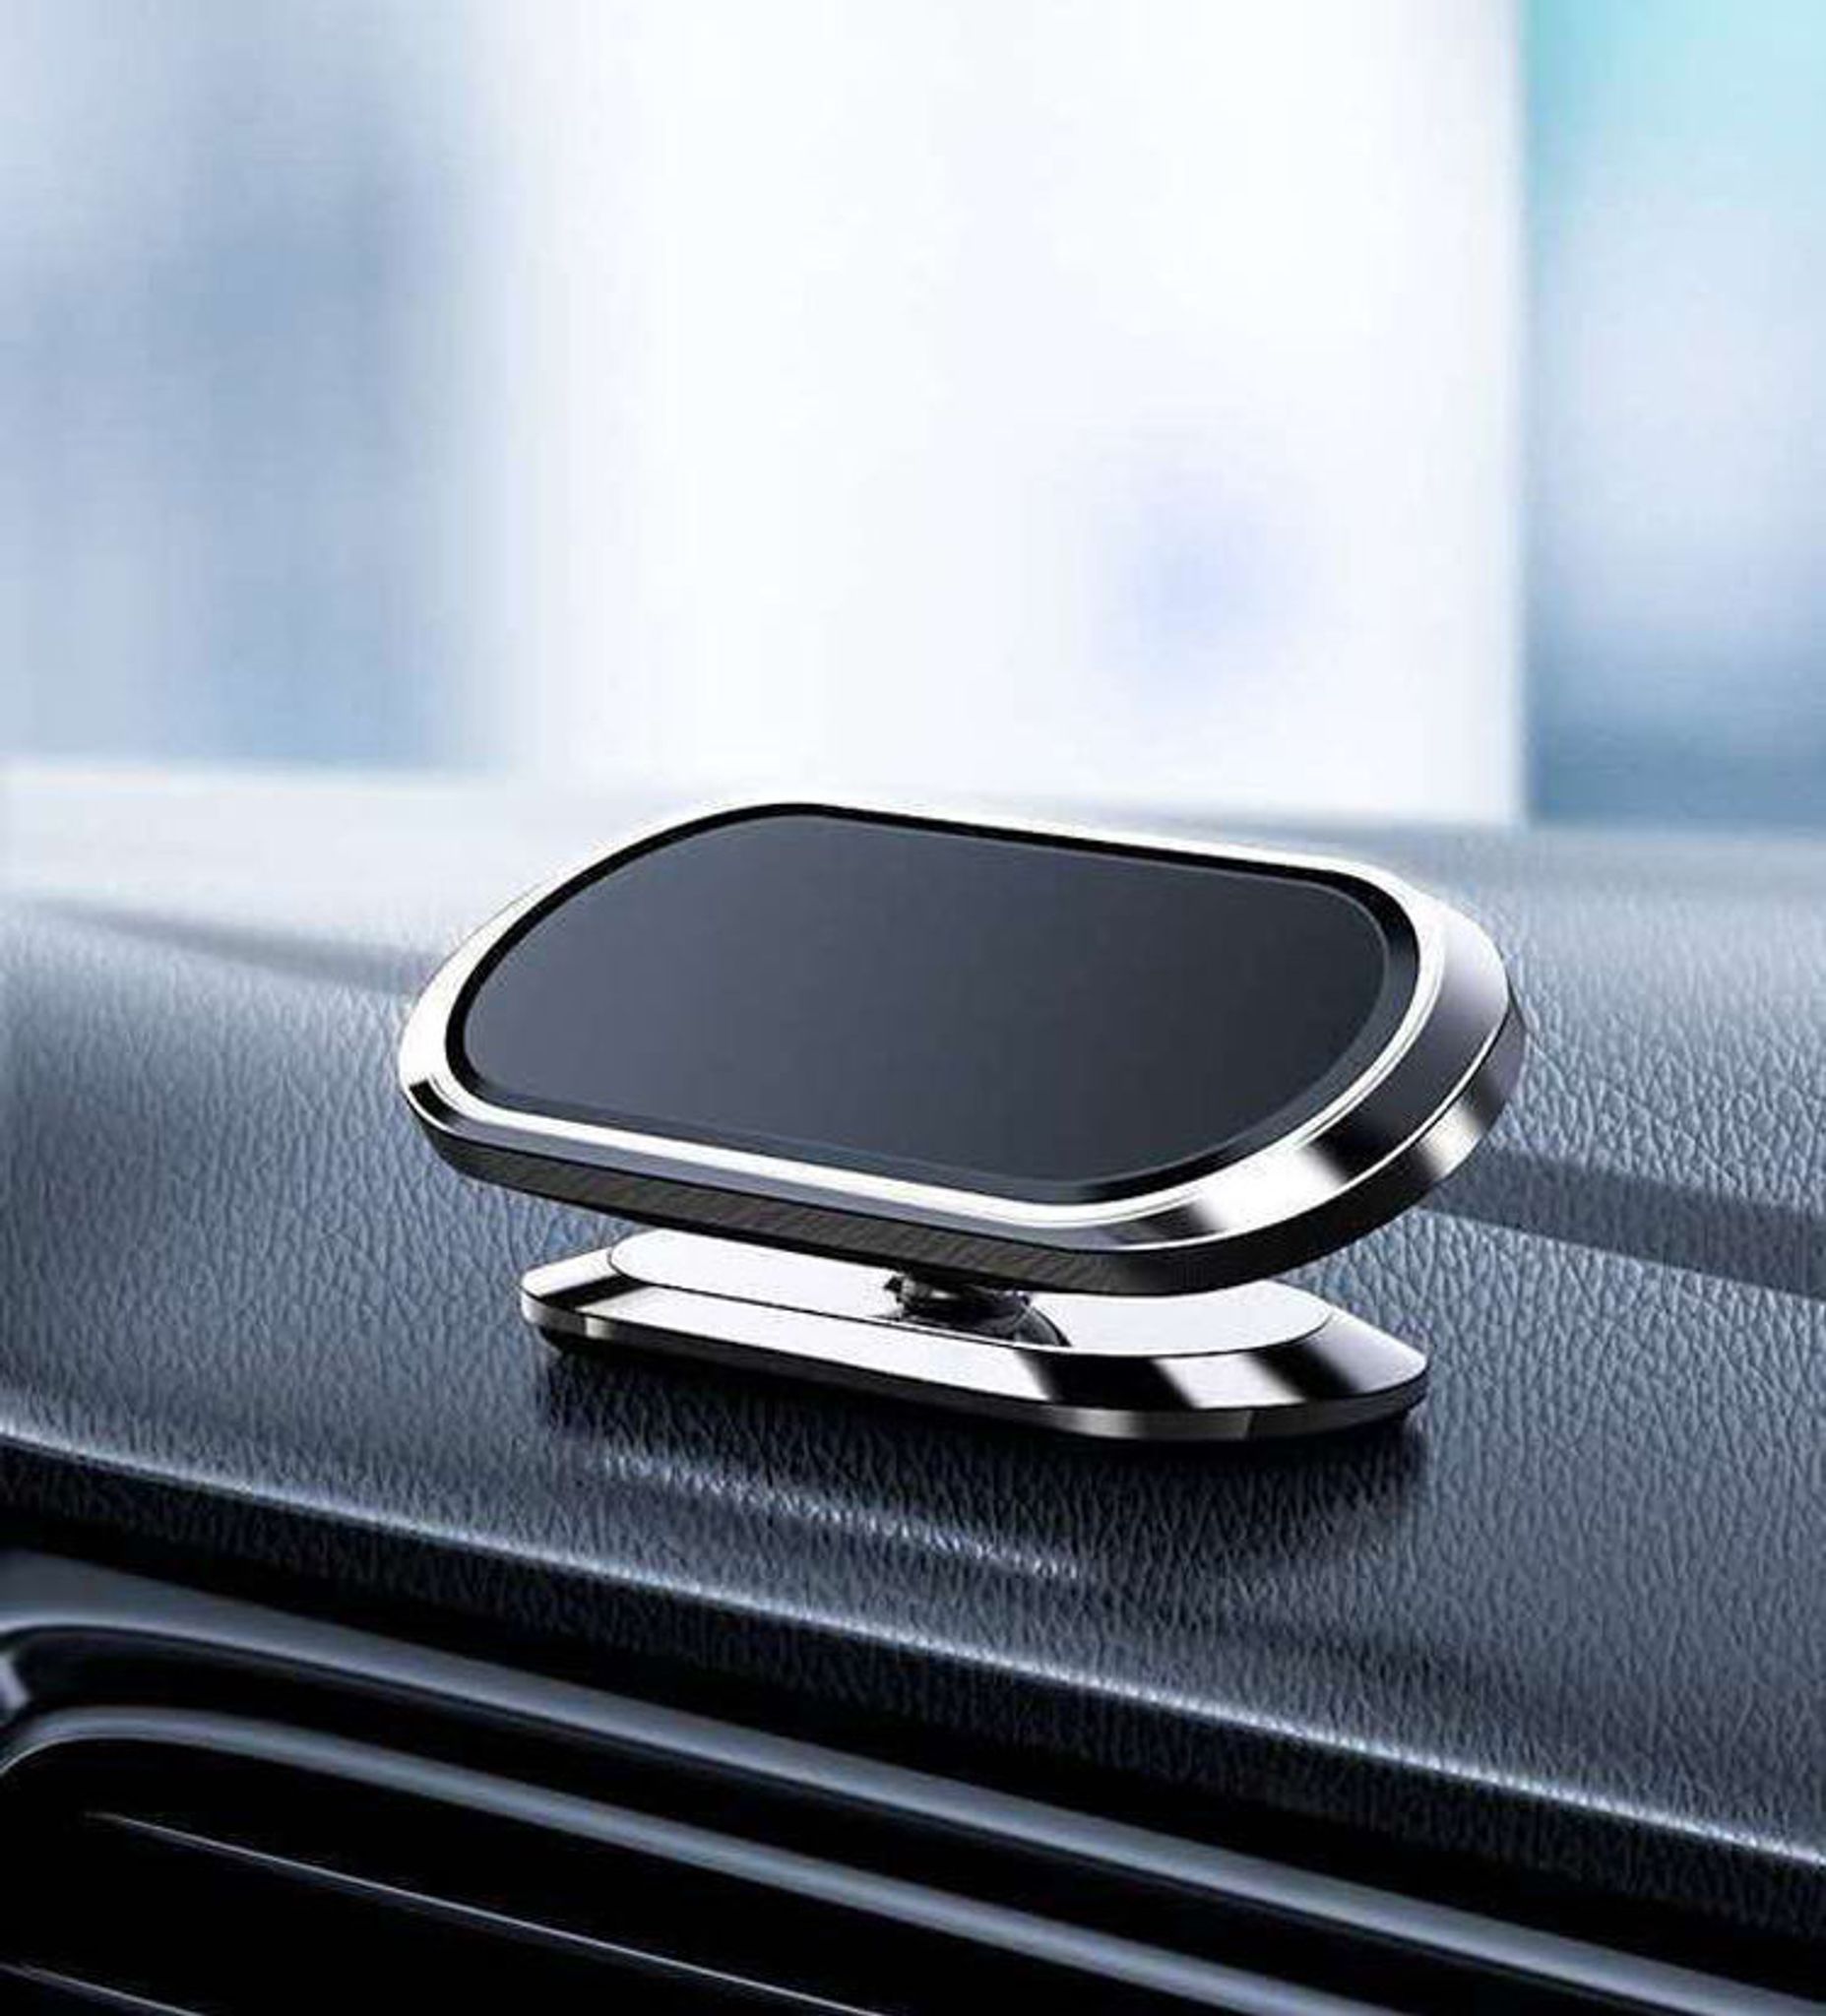 Magnetische Handyhalterung fürs Auto Faltbare 360 Grad Drehbare